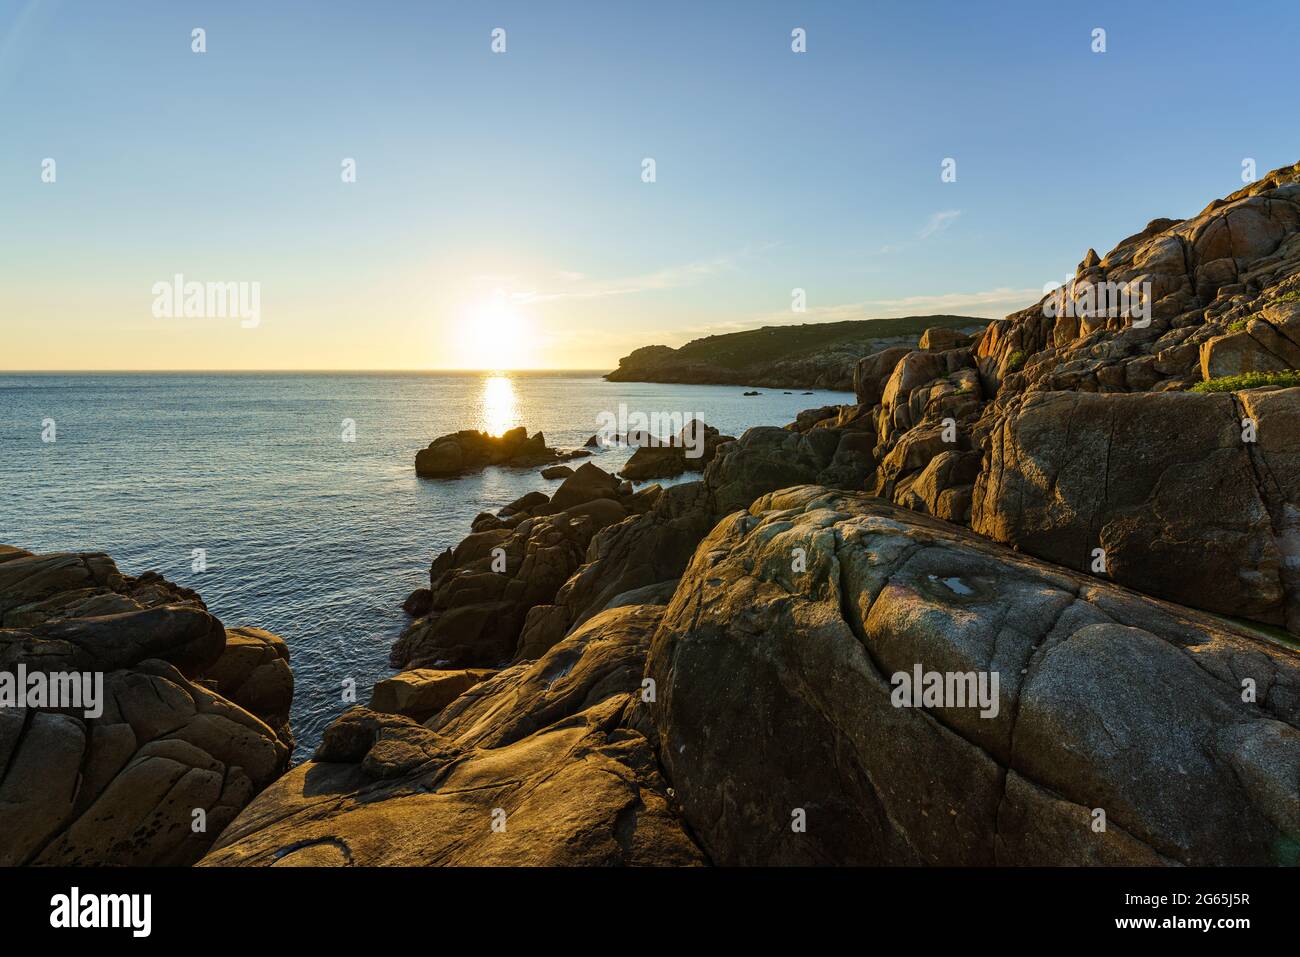 Escena de tranquilidad. Puesta de sol sobre el mar tranquilo, Océano Atlántico, Galicia, España Foto de stock